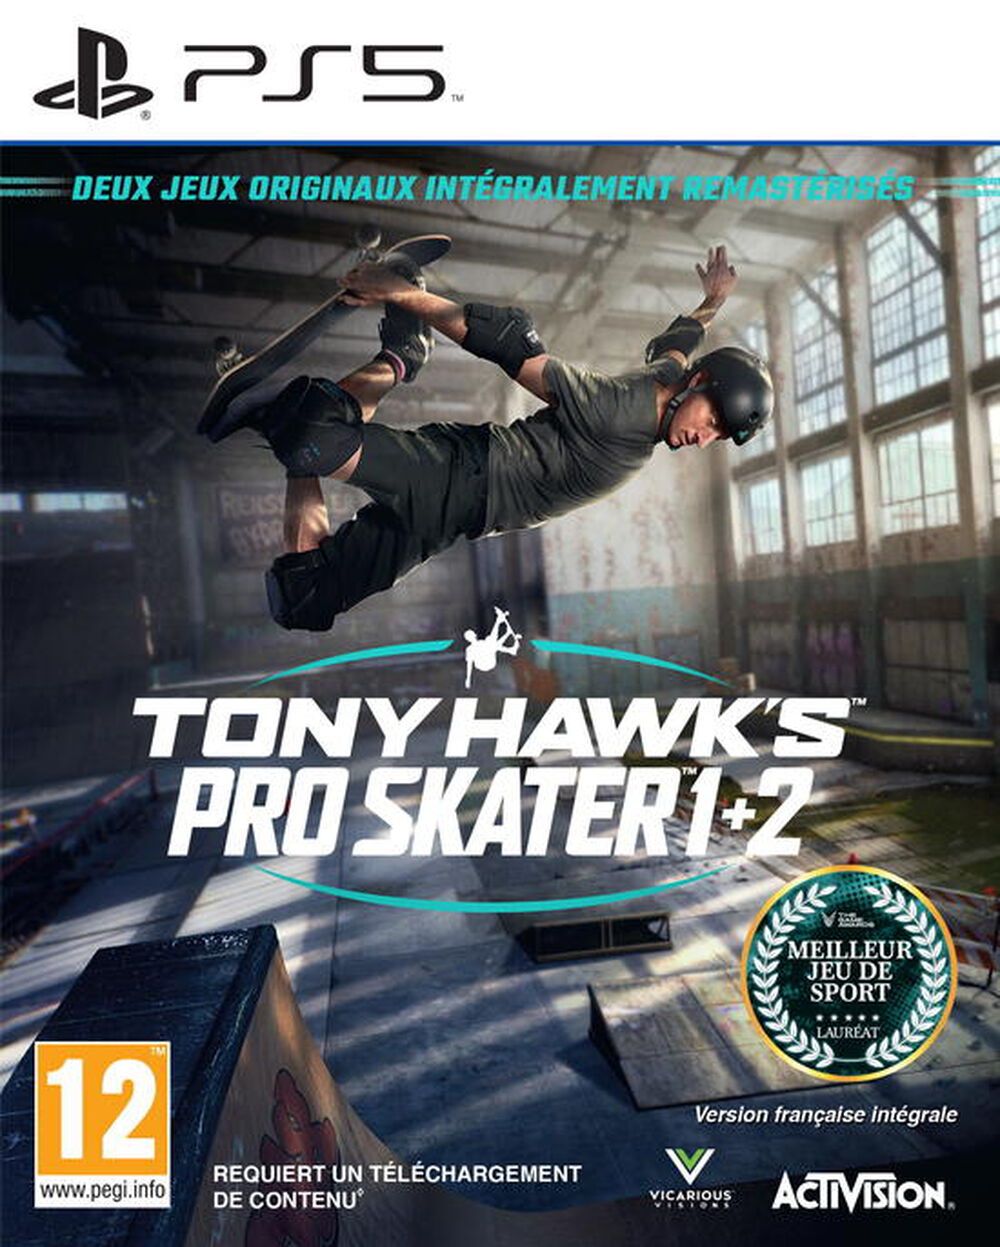 Tony Hawk's Pro Skater 1 + 2 